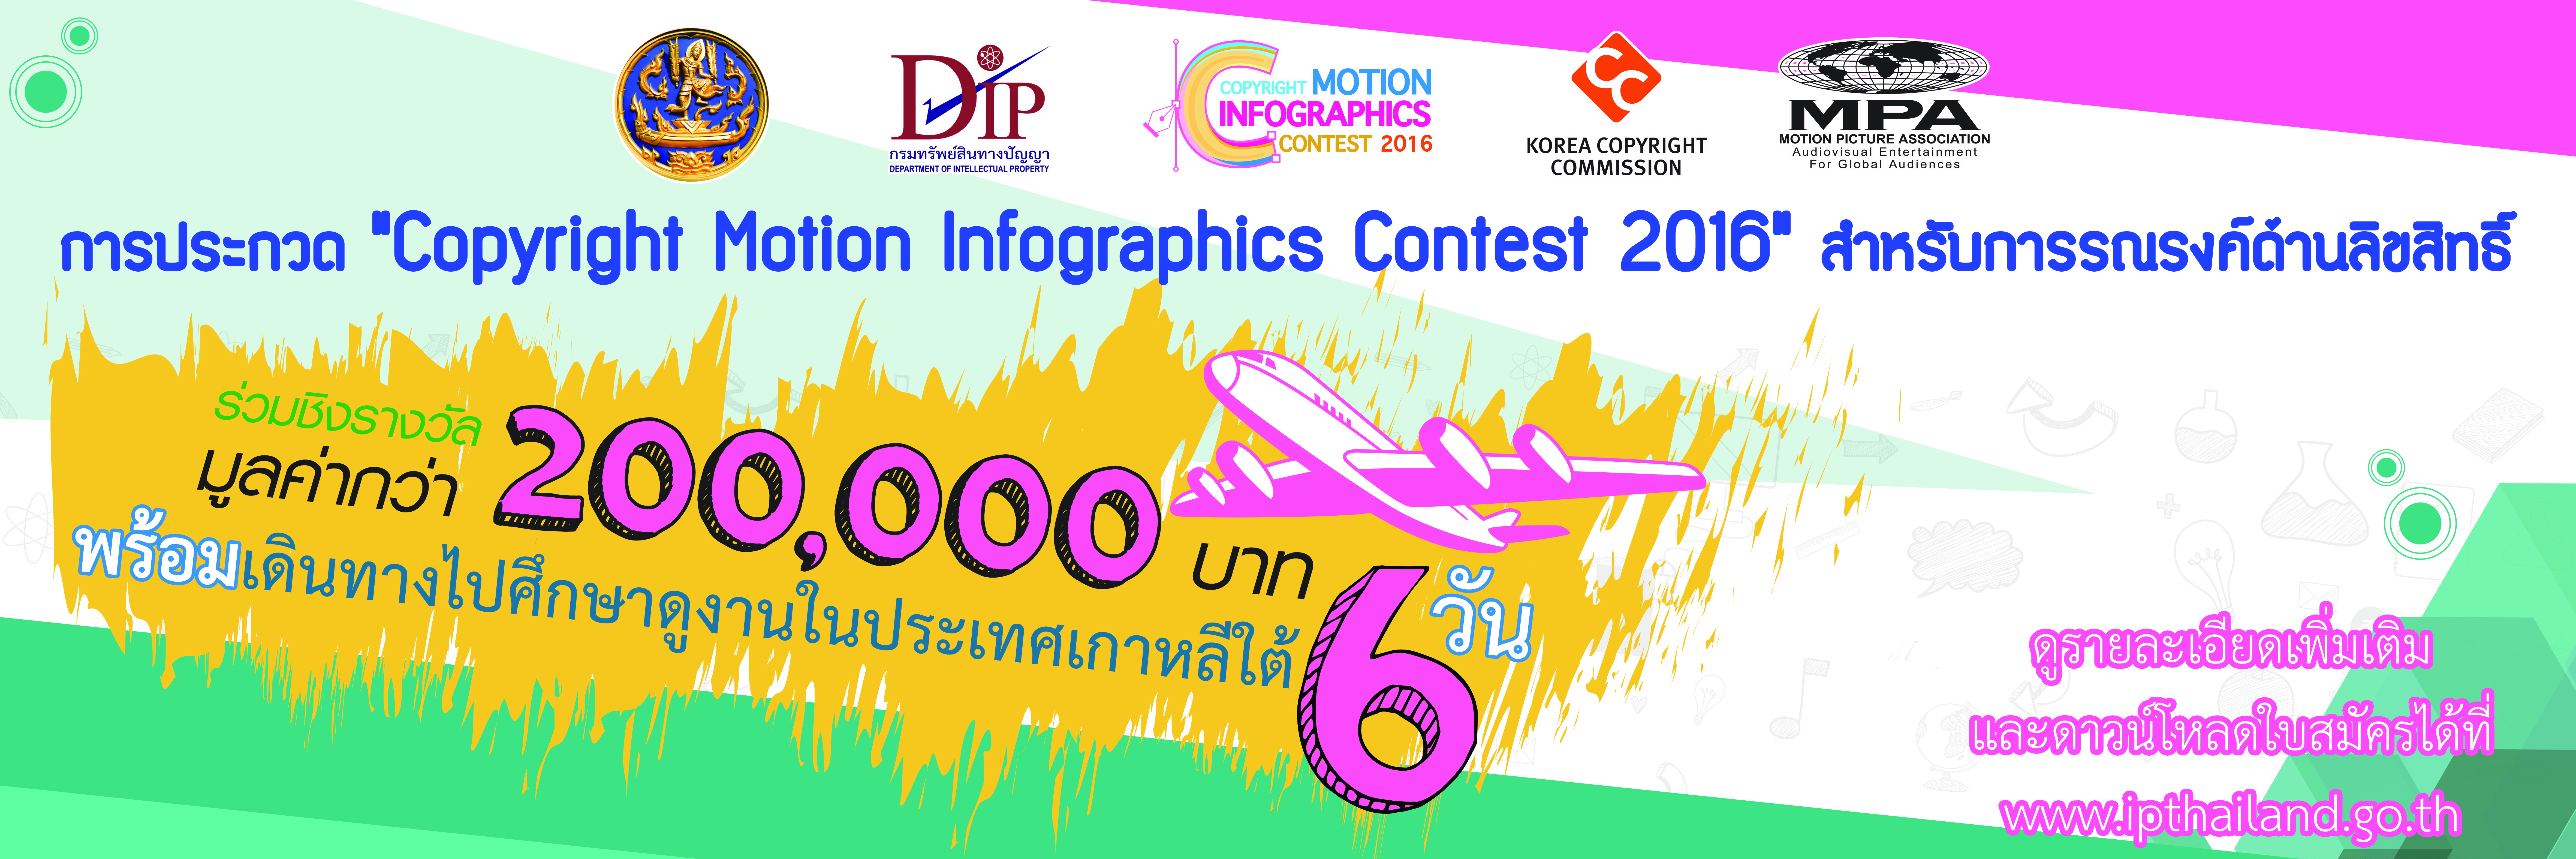 กรมทรัพย์สินทางปัญญาฯ ขอเชิญนักศึกษาส่งผลงานเข้าร่วมประกวด Copyright Motion Infographics Contest 2016